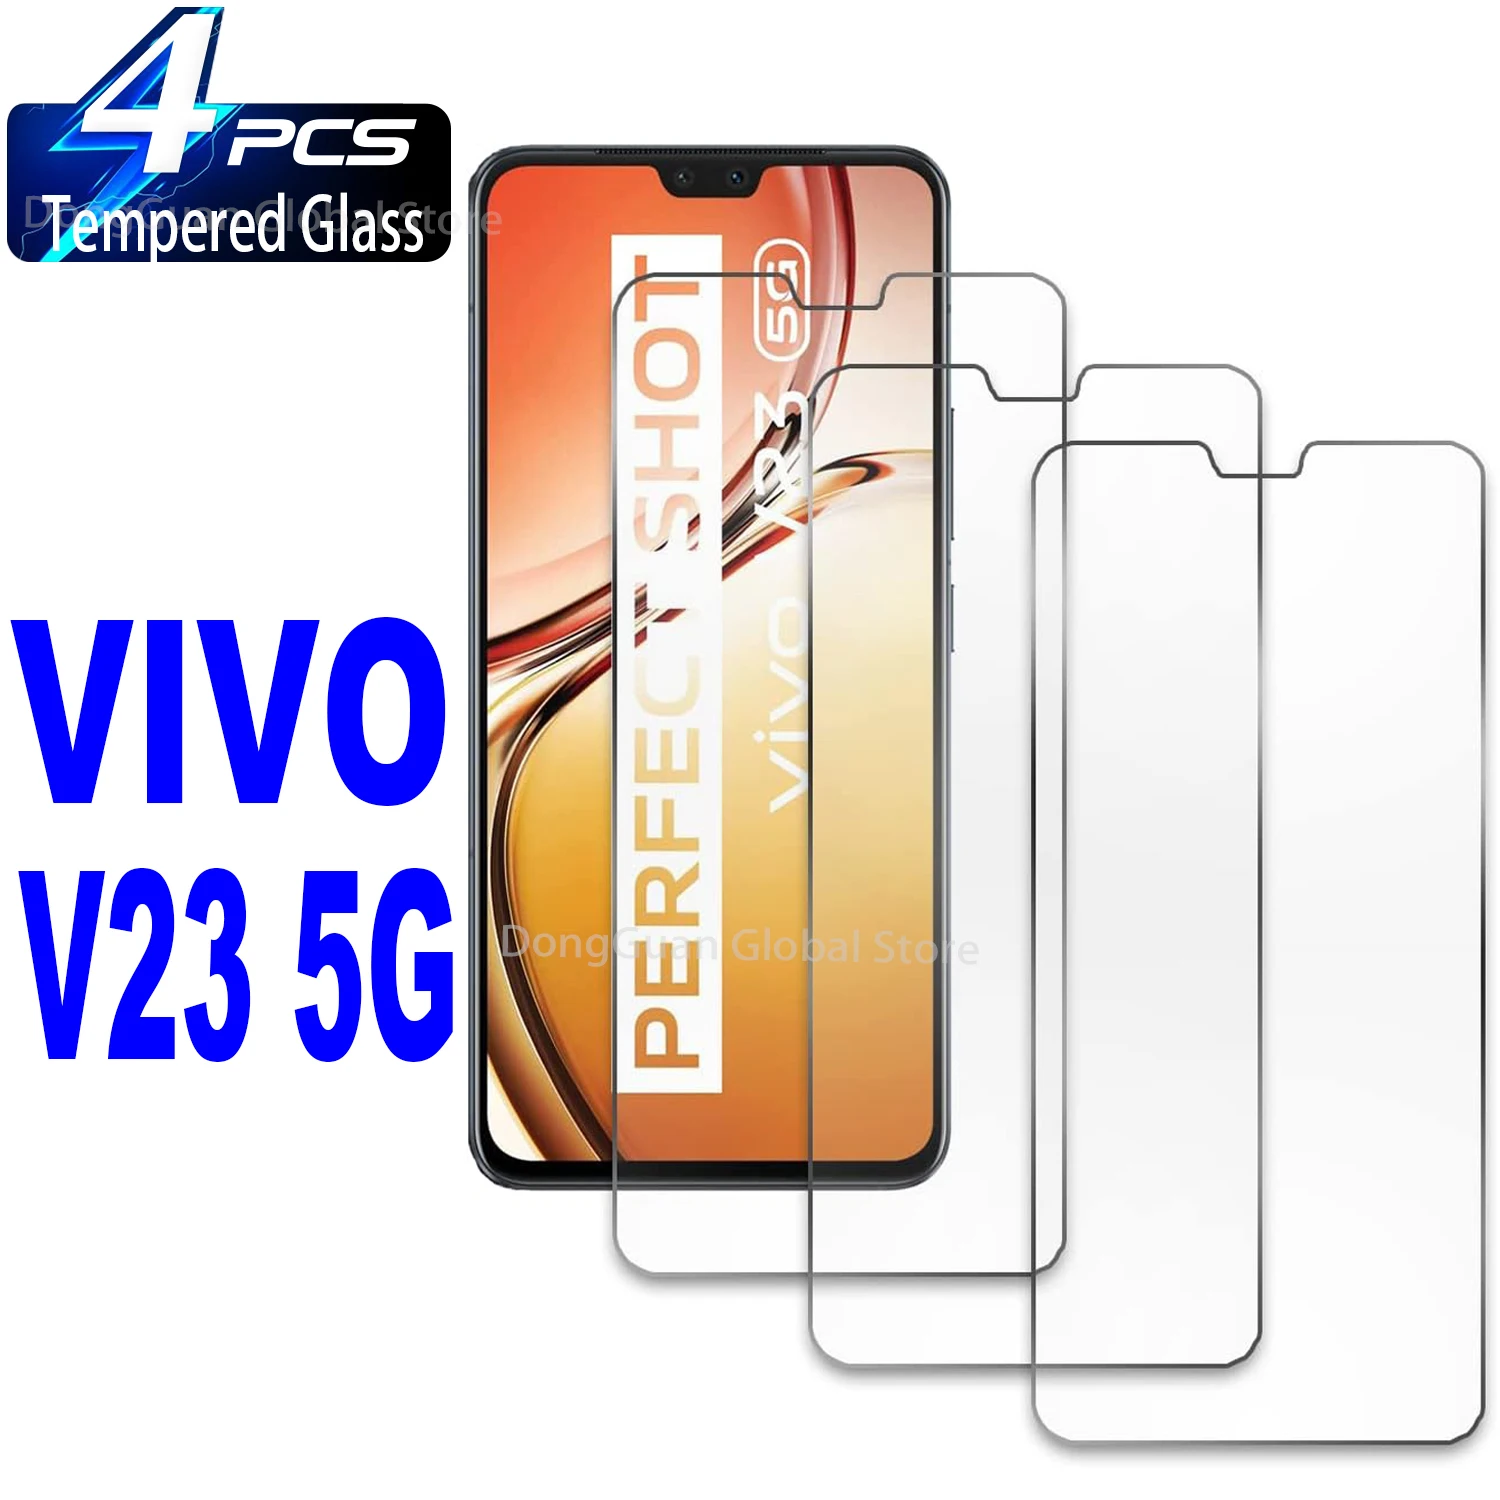 

4Pcs Tempered Glass For Vivo V23 V25 V27E V21 V21e V21s V20 V17 5G Y72 Y76 Y32 Y33 Y33e Y35 5G Screen Protector Glass Film